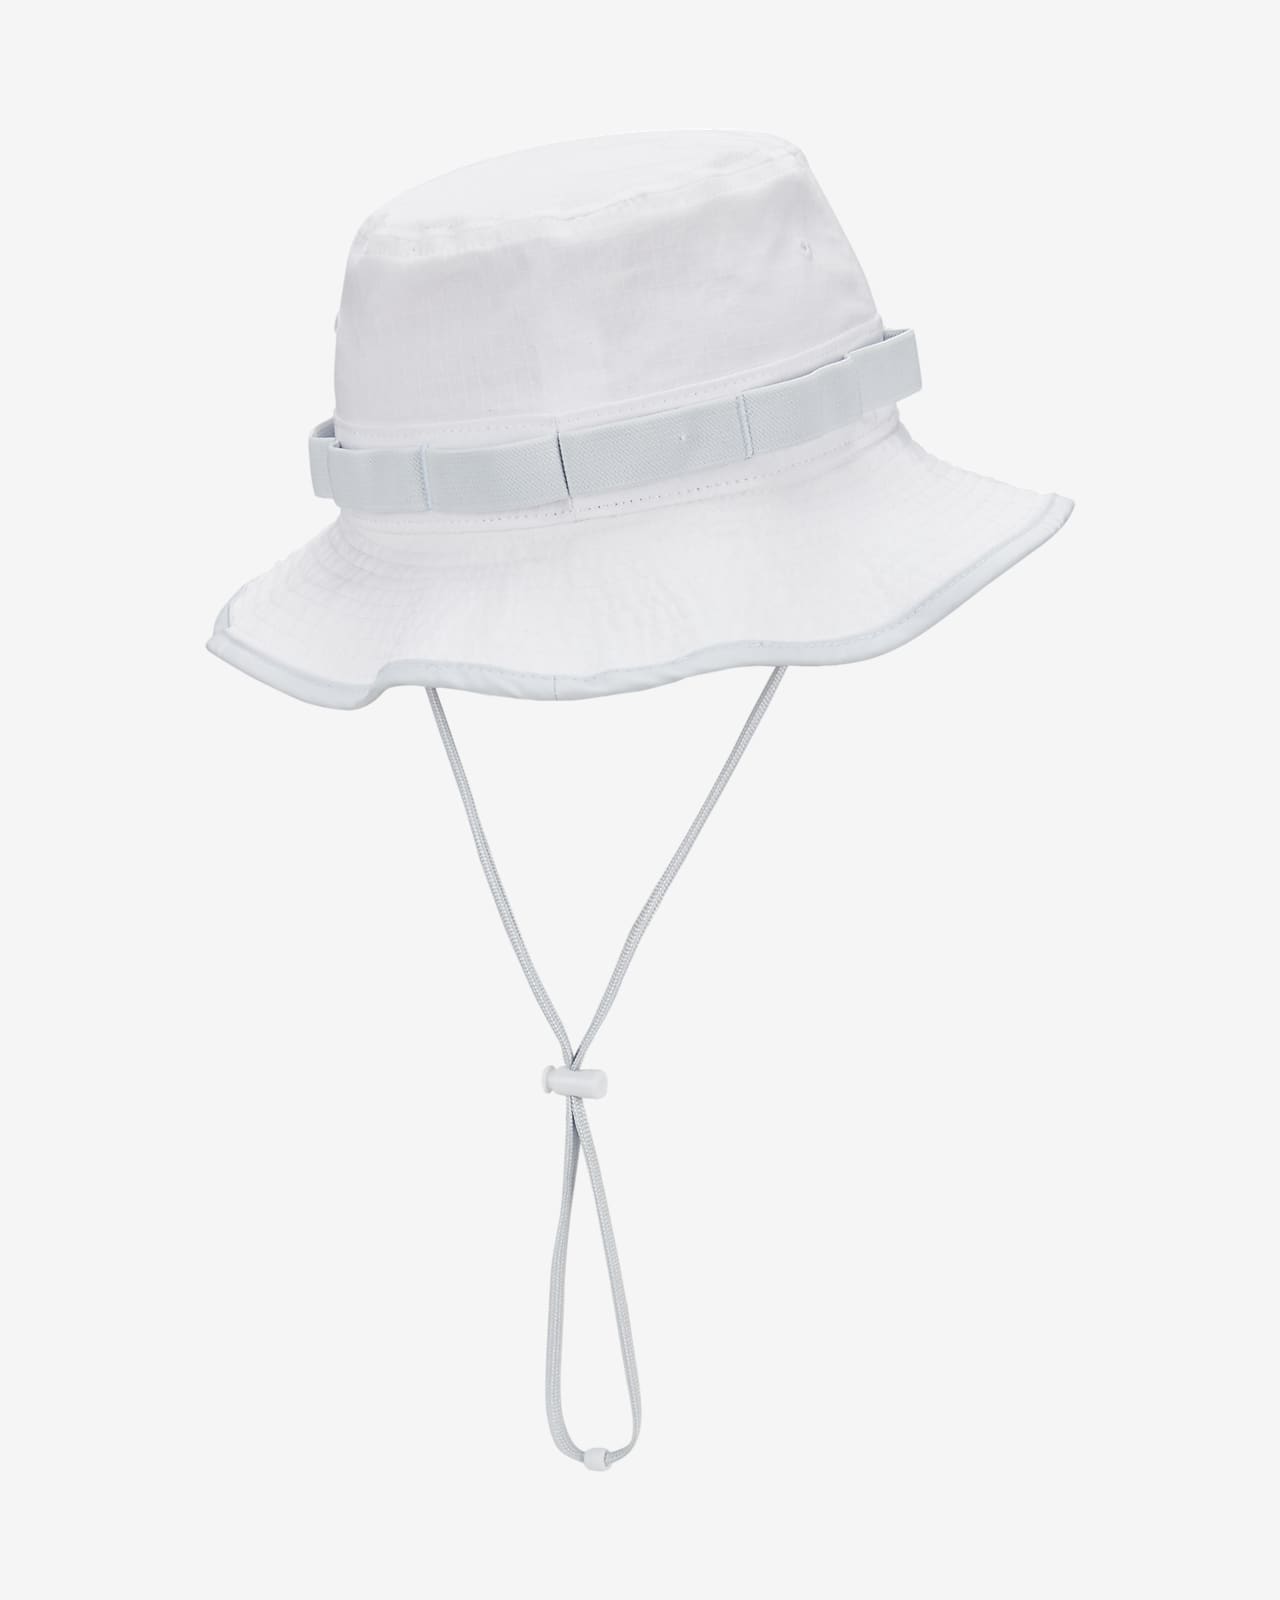 Nike Sportswear Bucket Hat - White